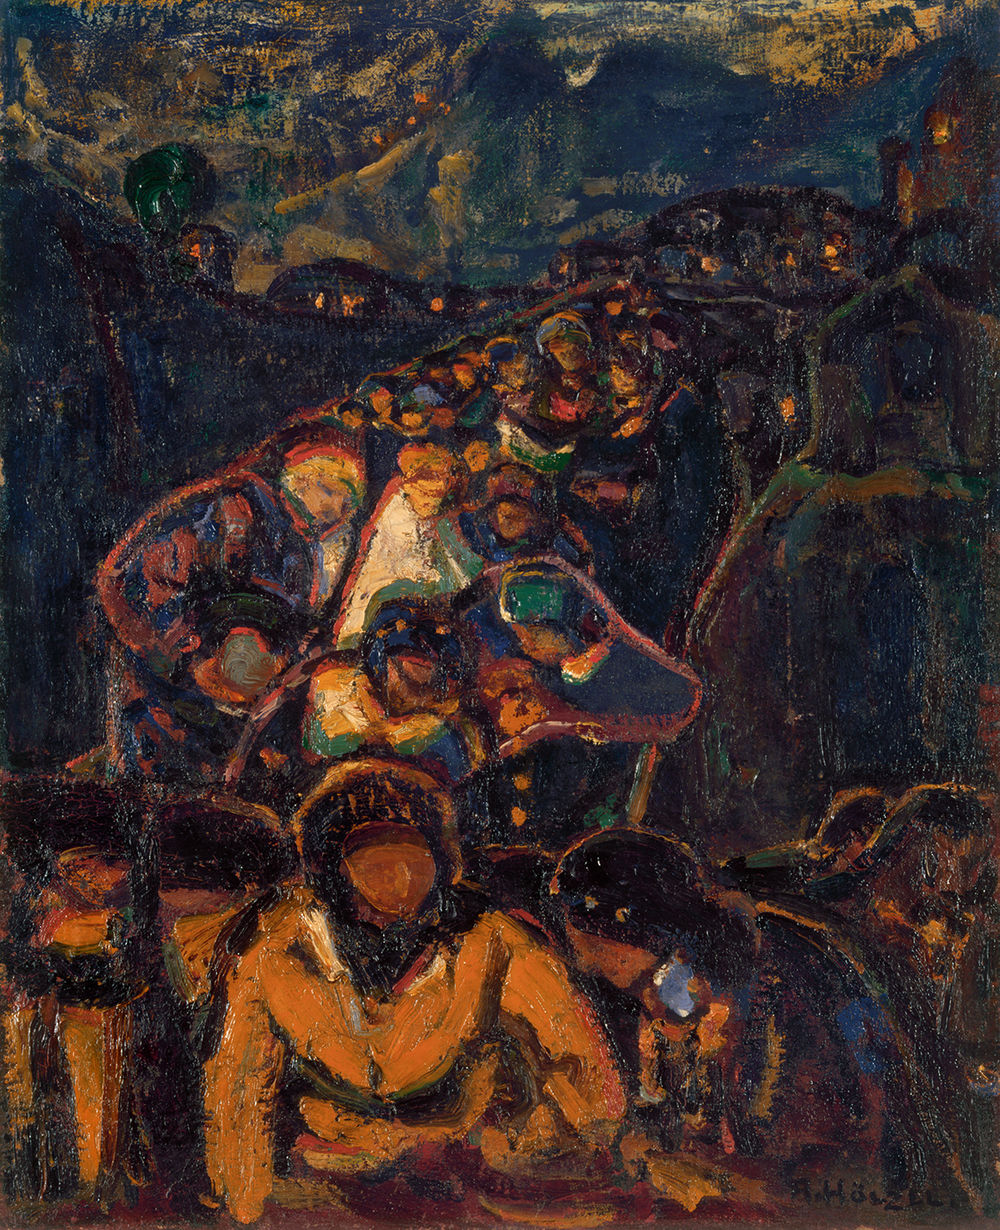 Adolf Hölzel, Prozession im Gebirge, 1909/10, Öl auf Leinwand, 62 x 50,5 cm, Erben nach Ernst und Gertrud Flersheim, Foto: Museum Wiesbaden / Bernd Fickert